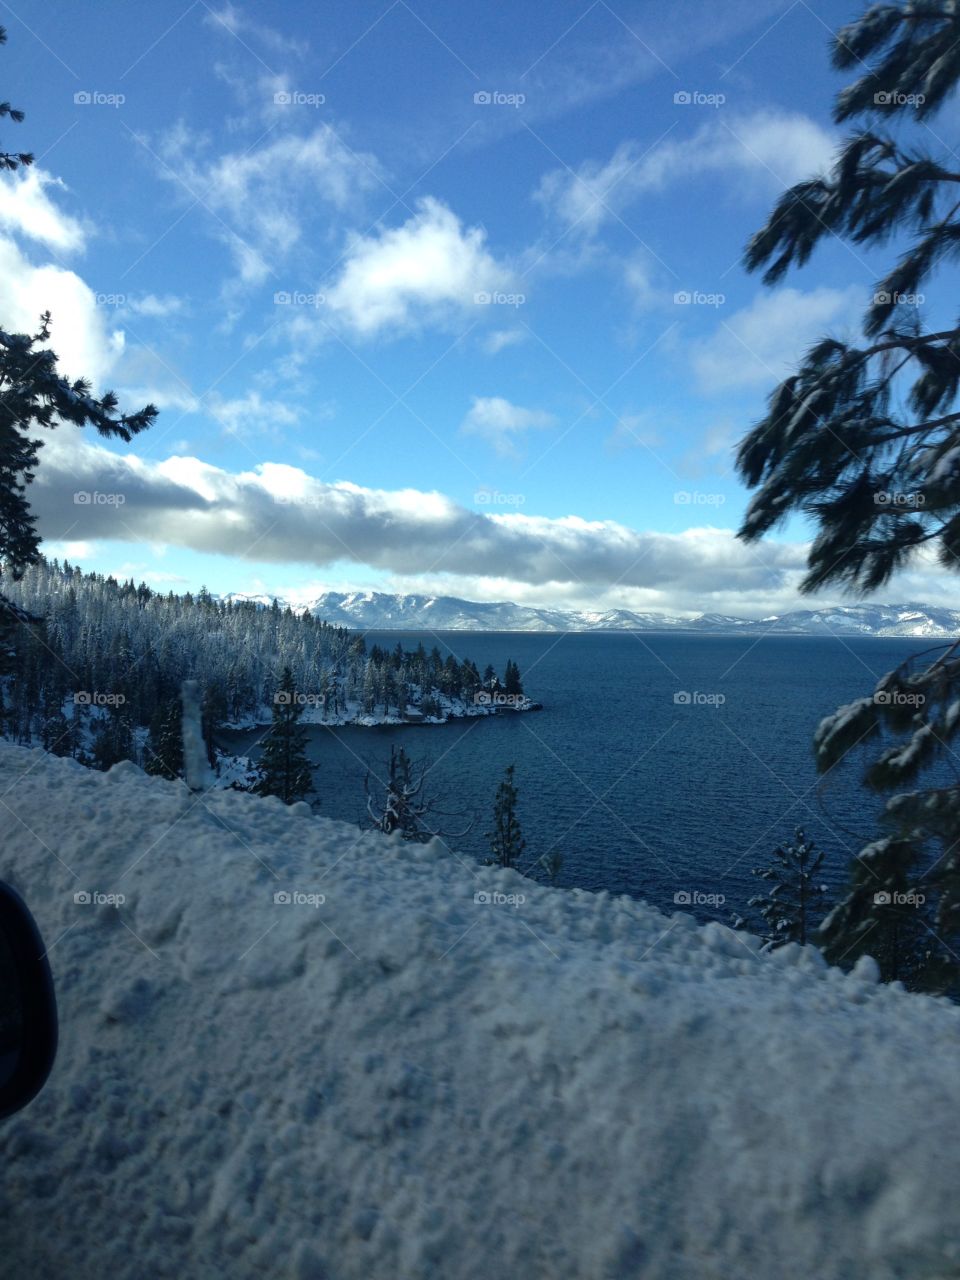 Snowy Christmas Eve in Lake Tahoe.